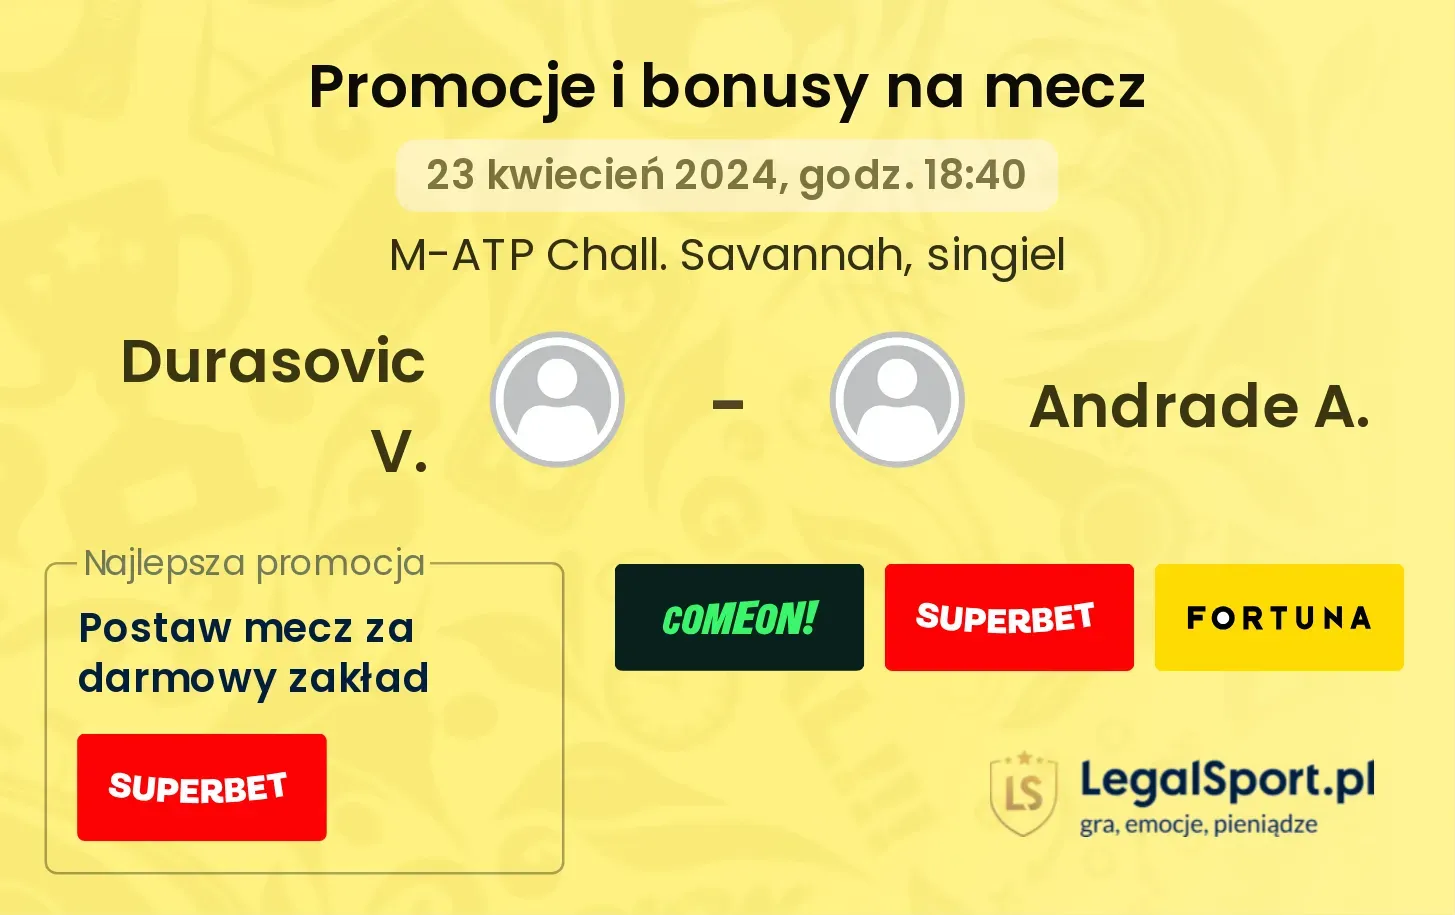 Durasovic V. - Andrade A. promocje bonusy na mecz